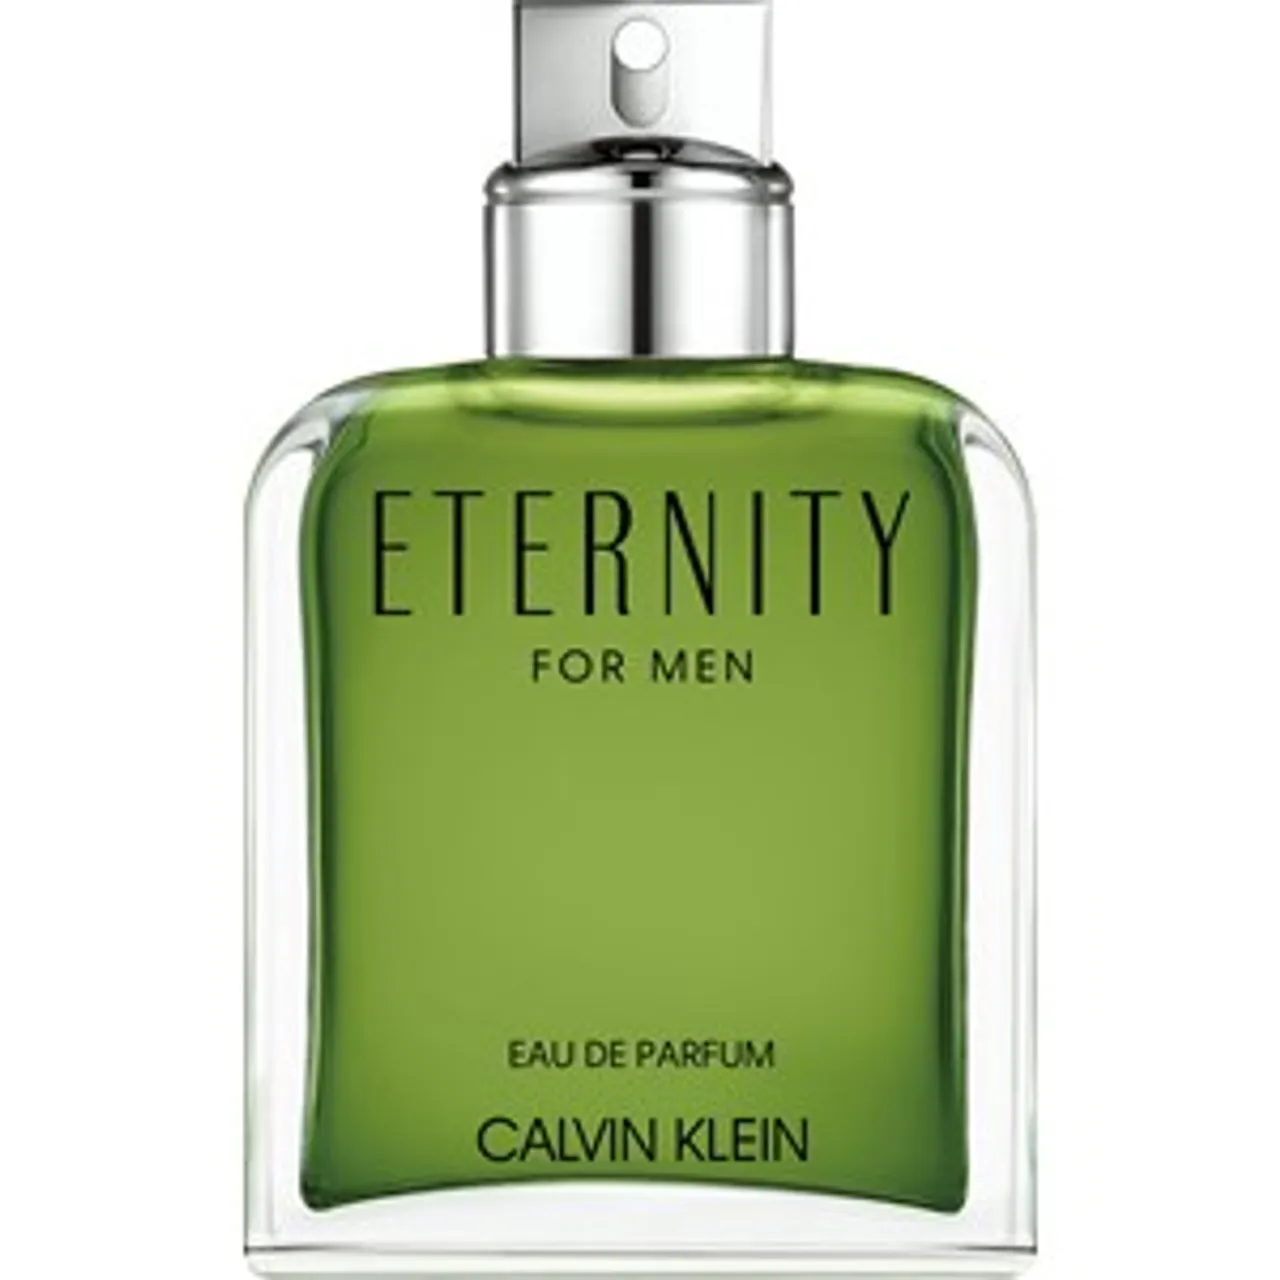 Calvin Klein Eau de Parfum Spray 1 100 ml